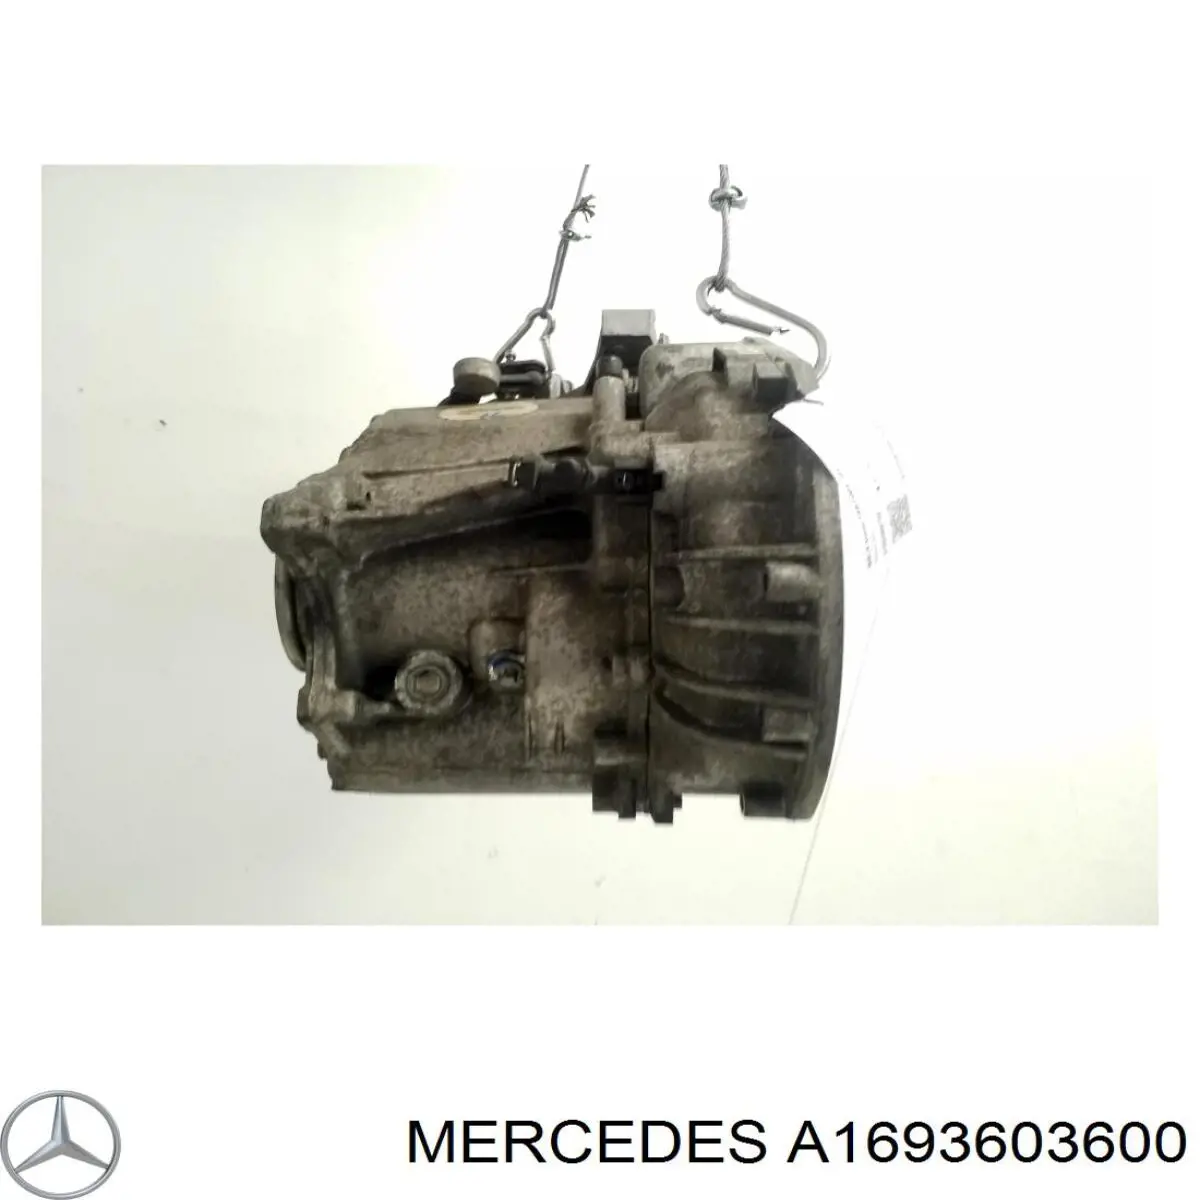 A1693603600 Mercedes caja de cambios mecánica, completa